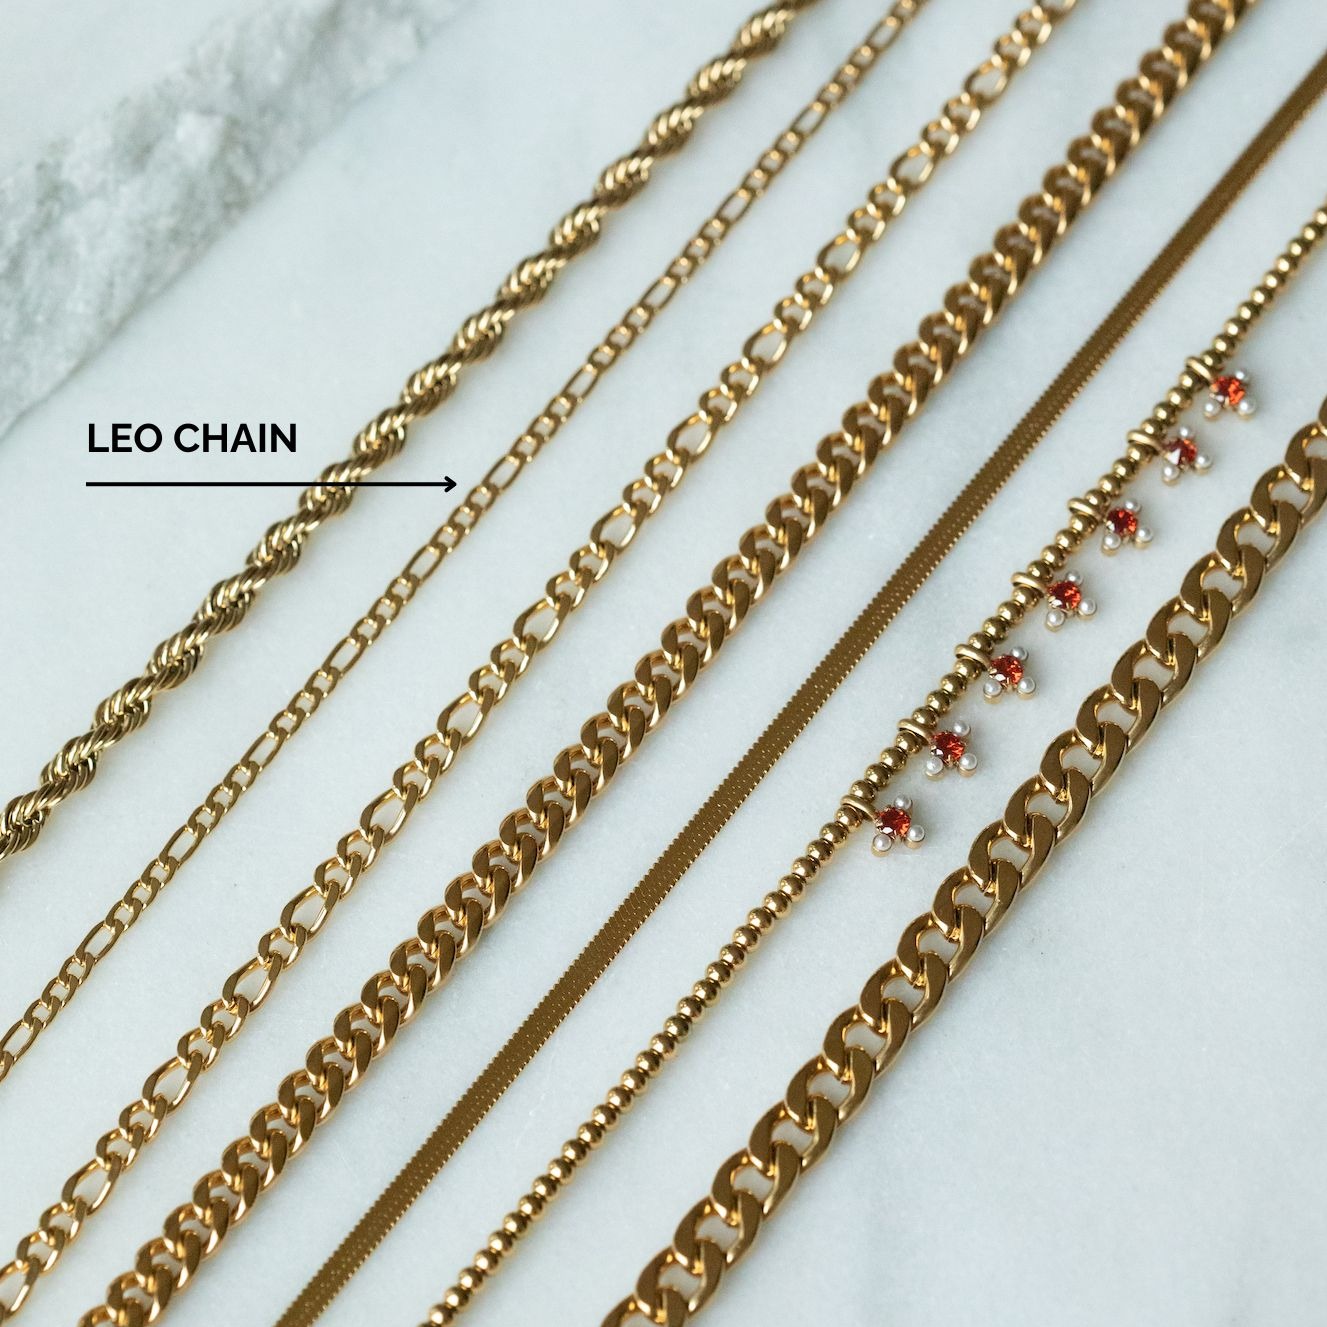 Leo Chain